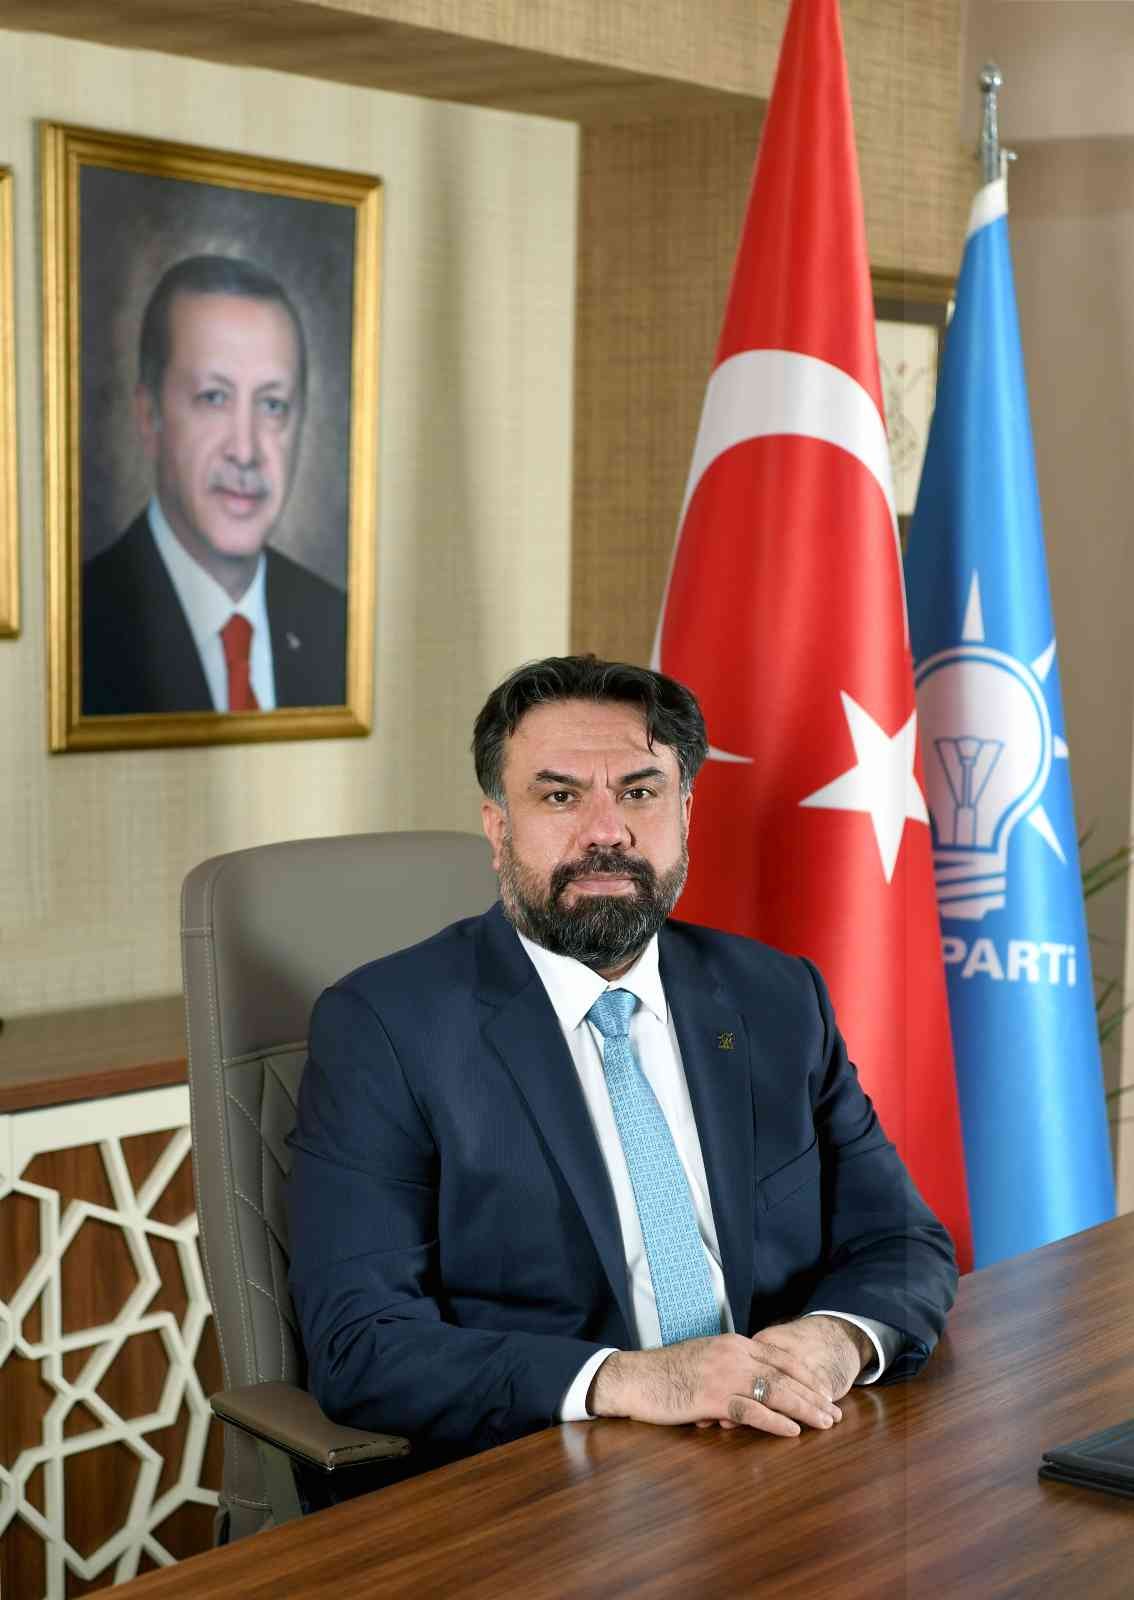 Balıkesir AK Parti İl Başkanı Ekrem Başaran, zeytinlik üzerinden algı operasyonu yapıldığını iddia ederek, muhalefeti sert dille eleştirdi. Son ...